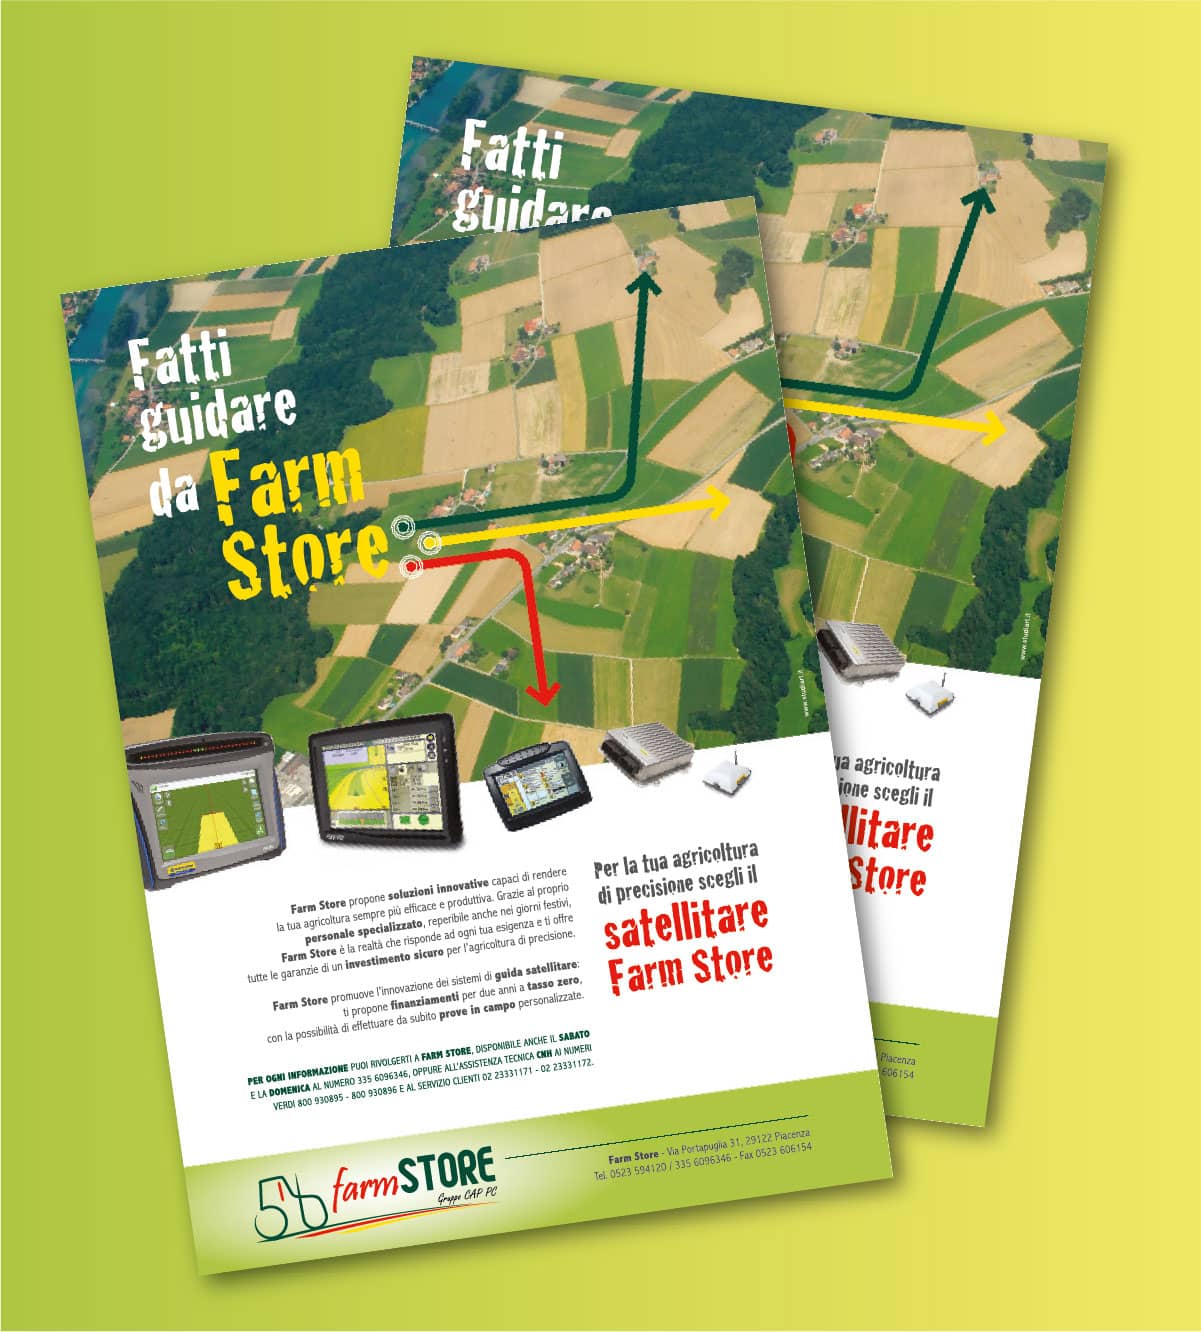 Farm Store, set d'iniziative per promuovere un nuovo punto di riferimento nell'agricoltura moderna